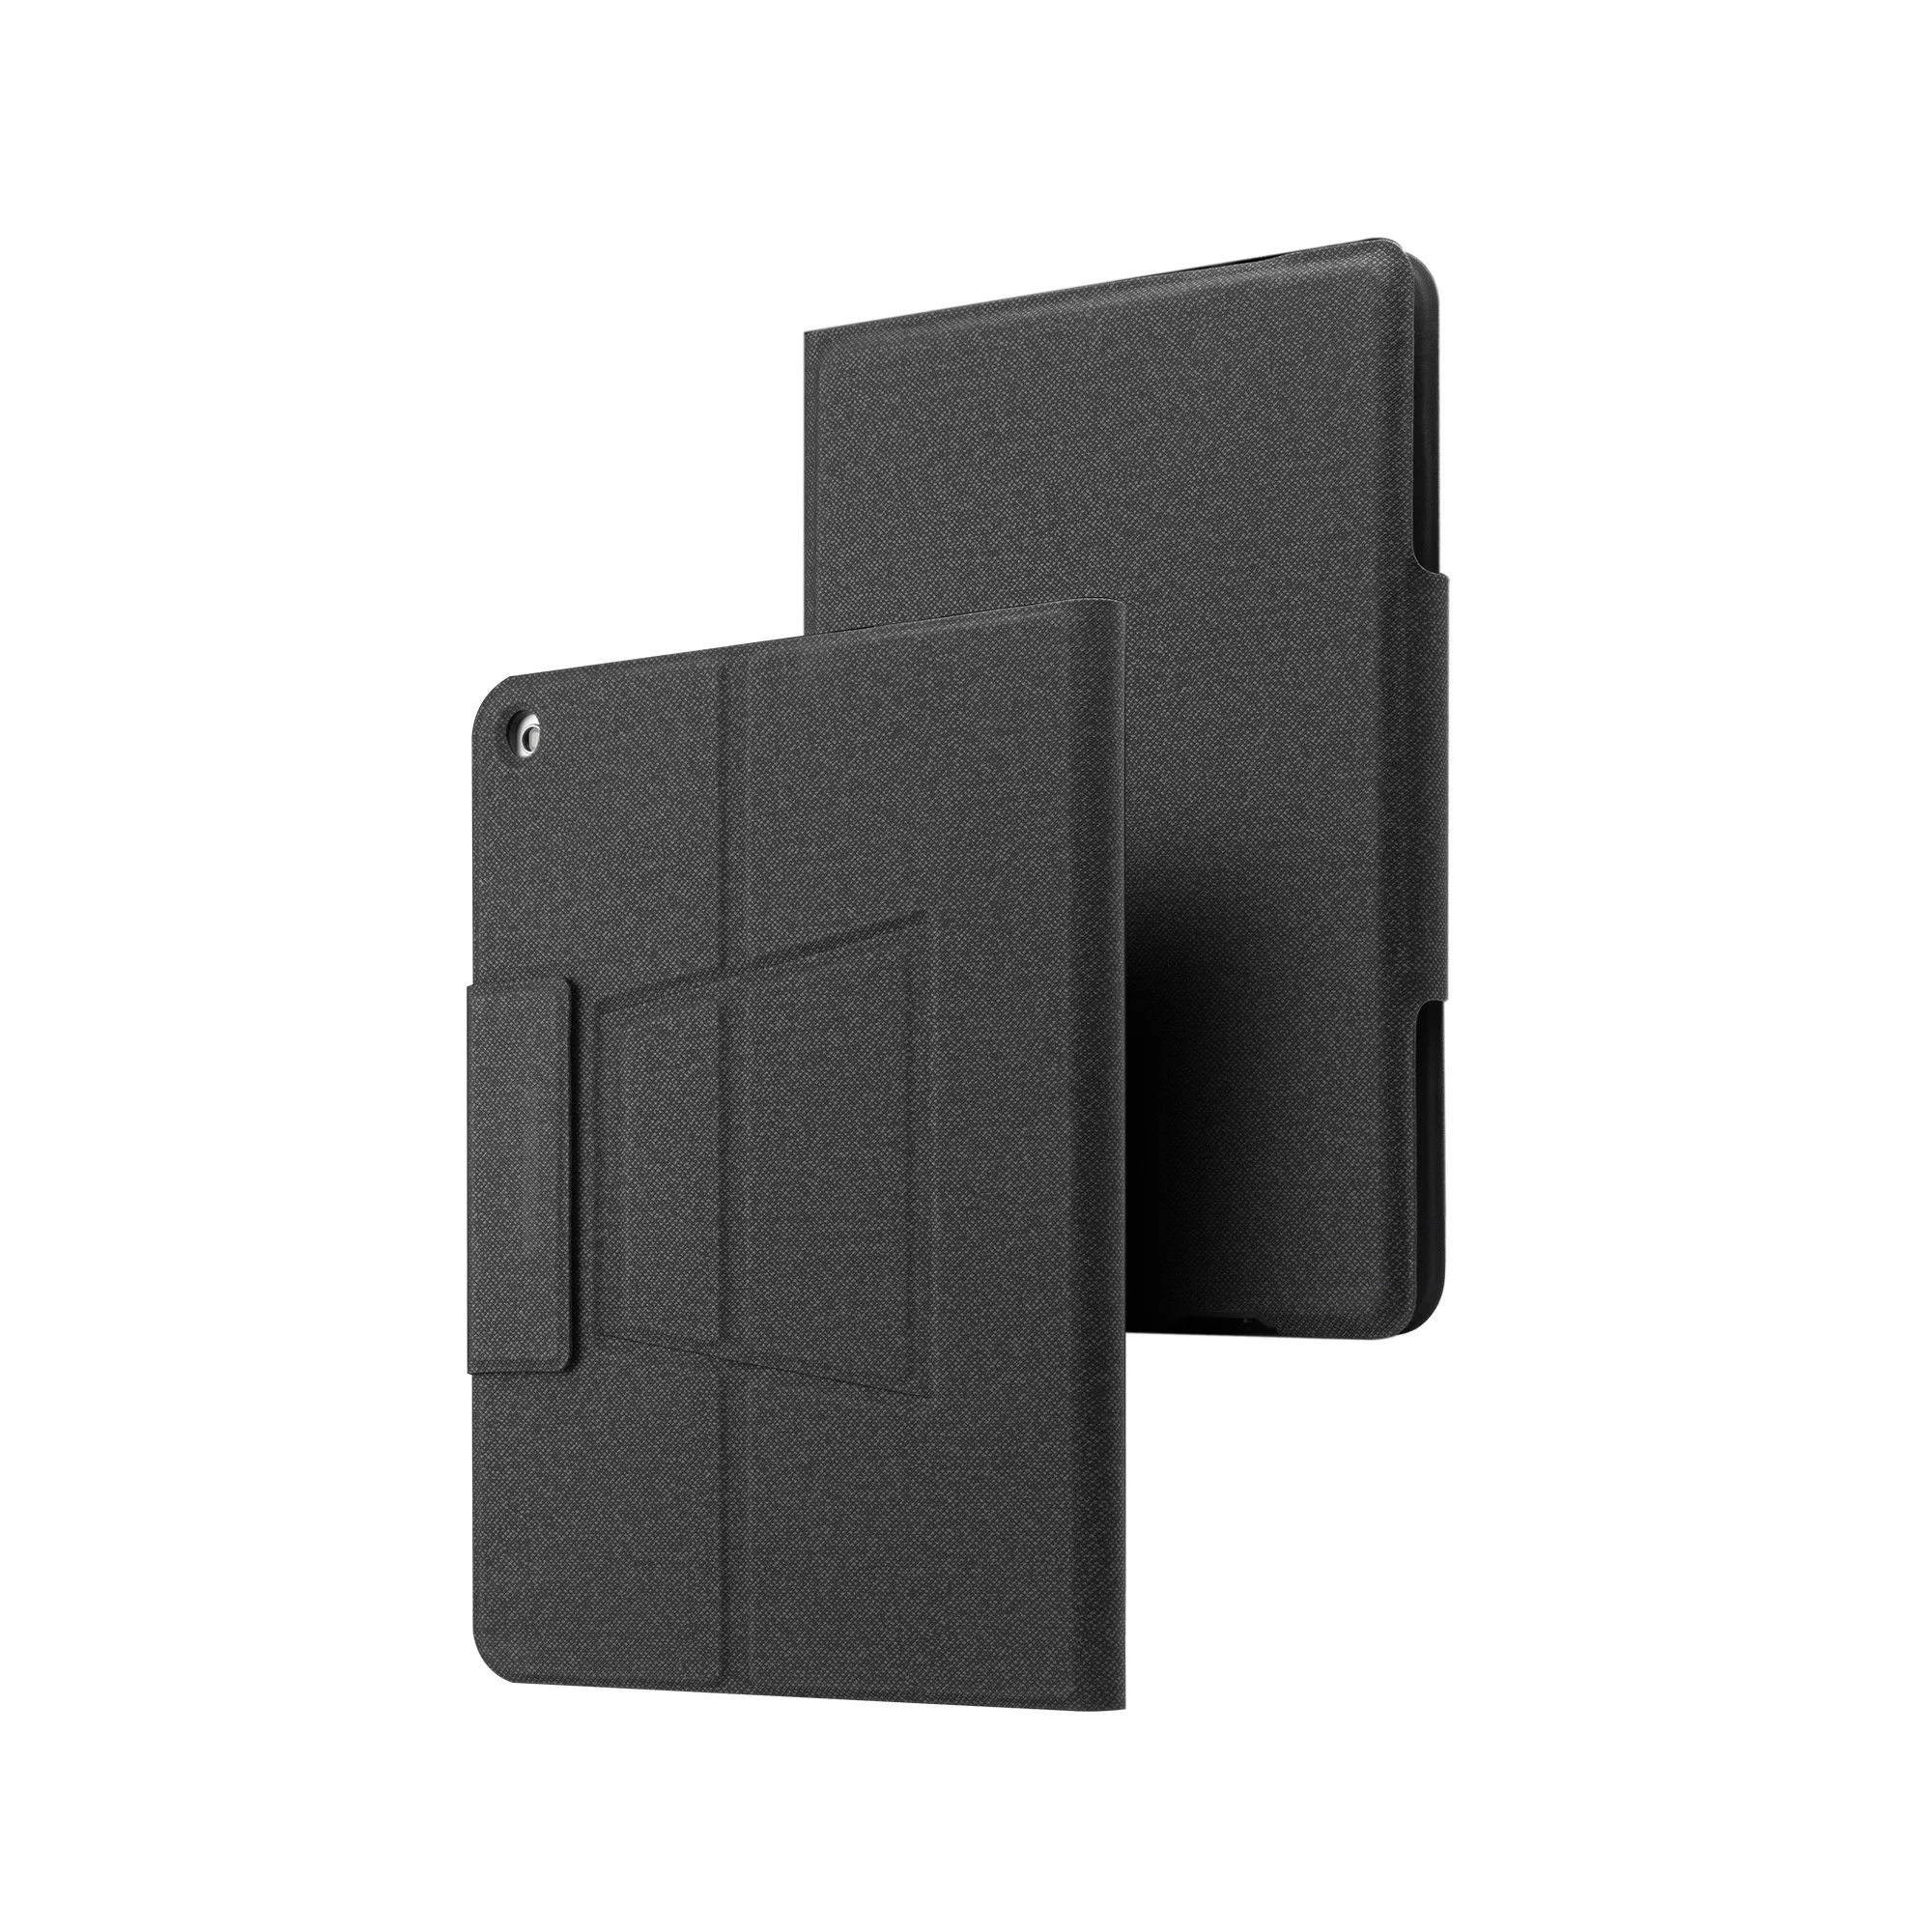 Беспроводная Bluetooth клавиатура Чехлы для планшетов для iPad Pro 10,2 Кожаные чехлы со СВЕТОДИОДНЫЙ крышка с подсветкой для Apple iPad Pro 10,2 - Цвет: Black